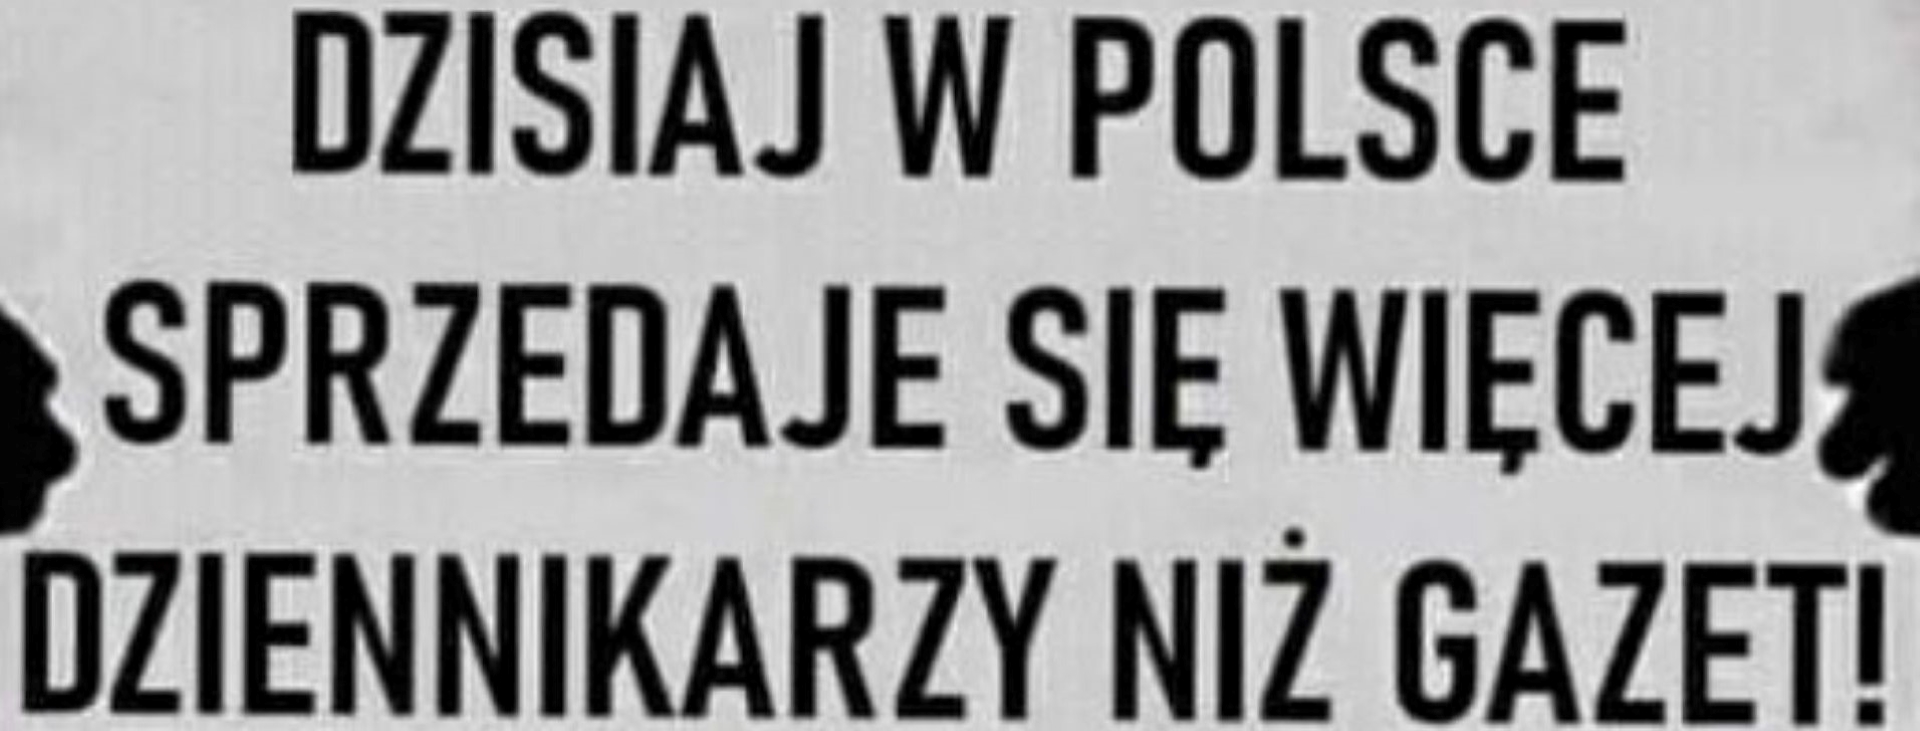 w Polsce sprzedaje się więcej dziennikarzy niz gazet